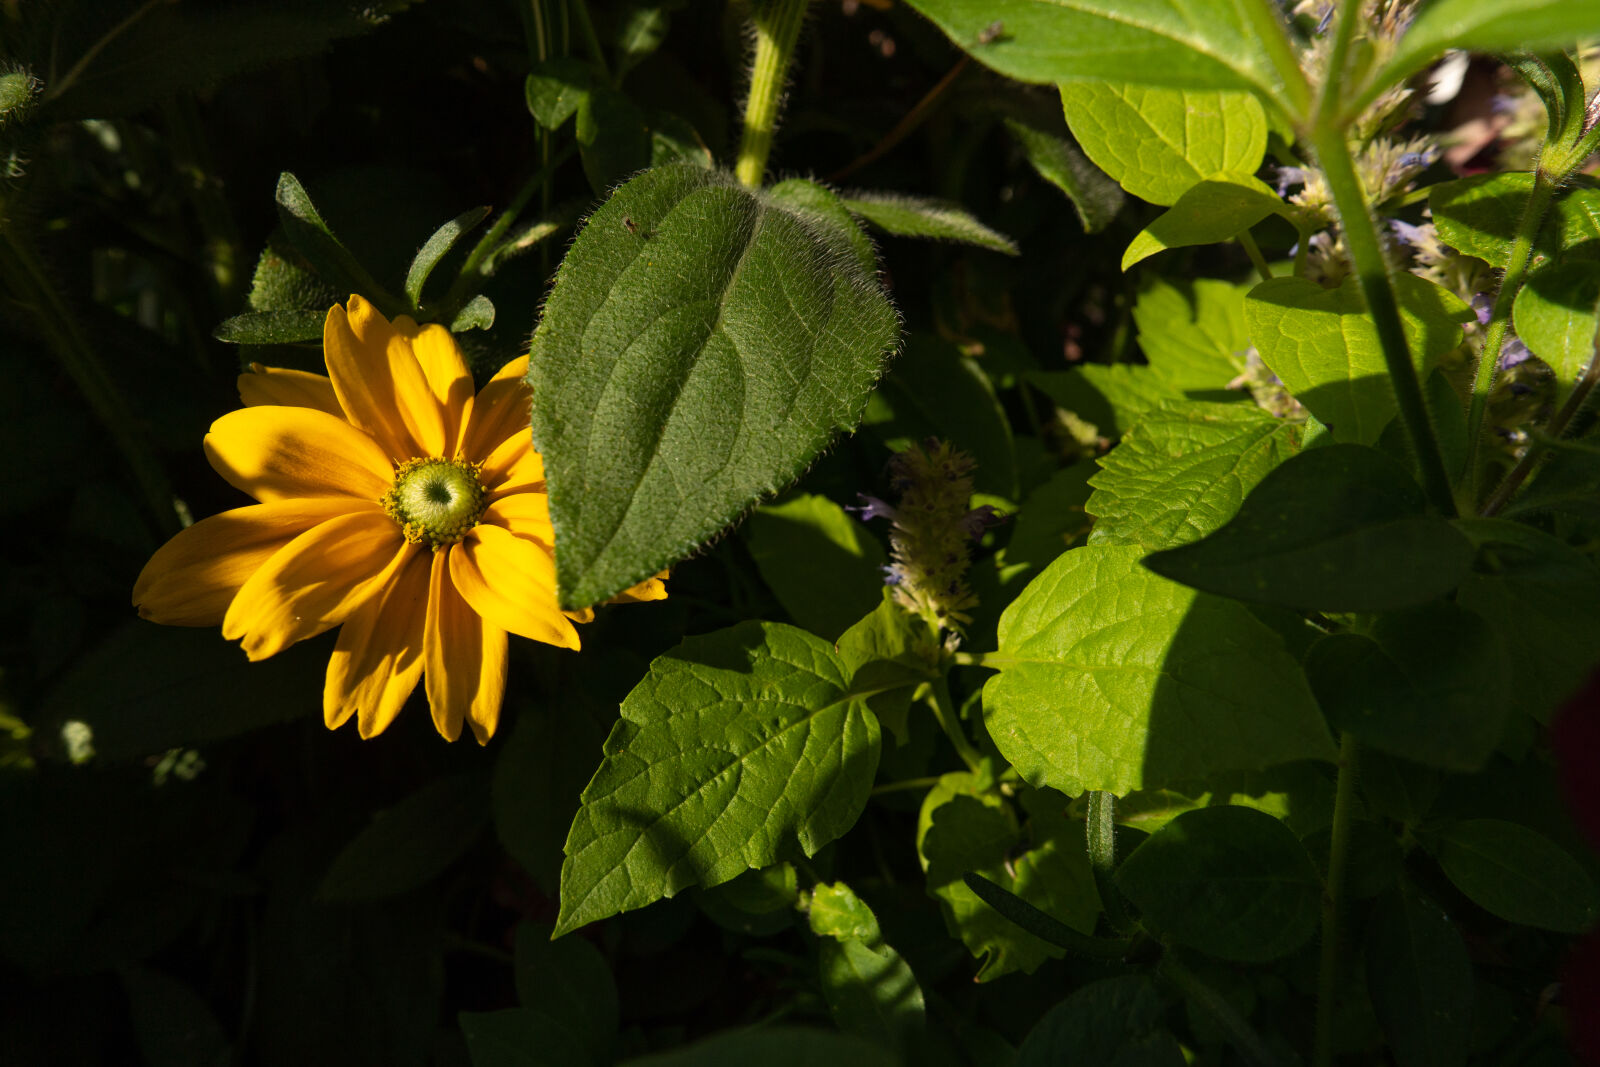 SAMYANG AF 12mm F2.0 sample photo. Flower at the sunshine photography